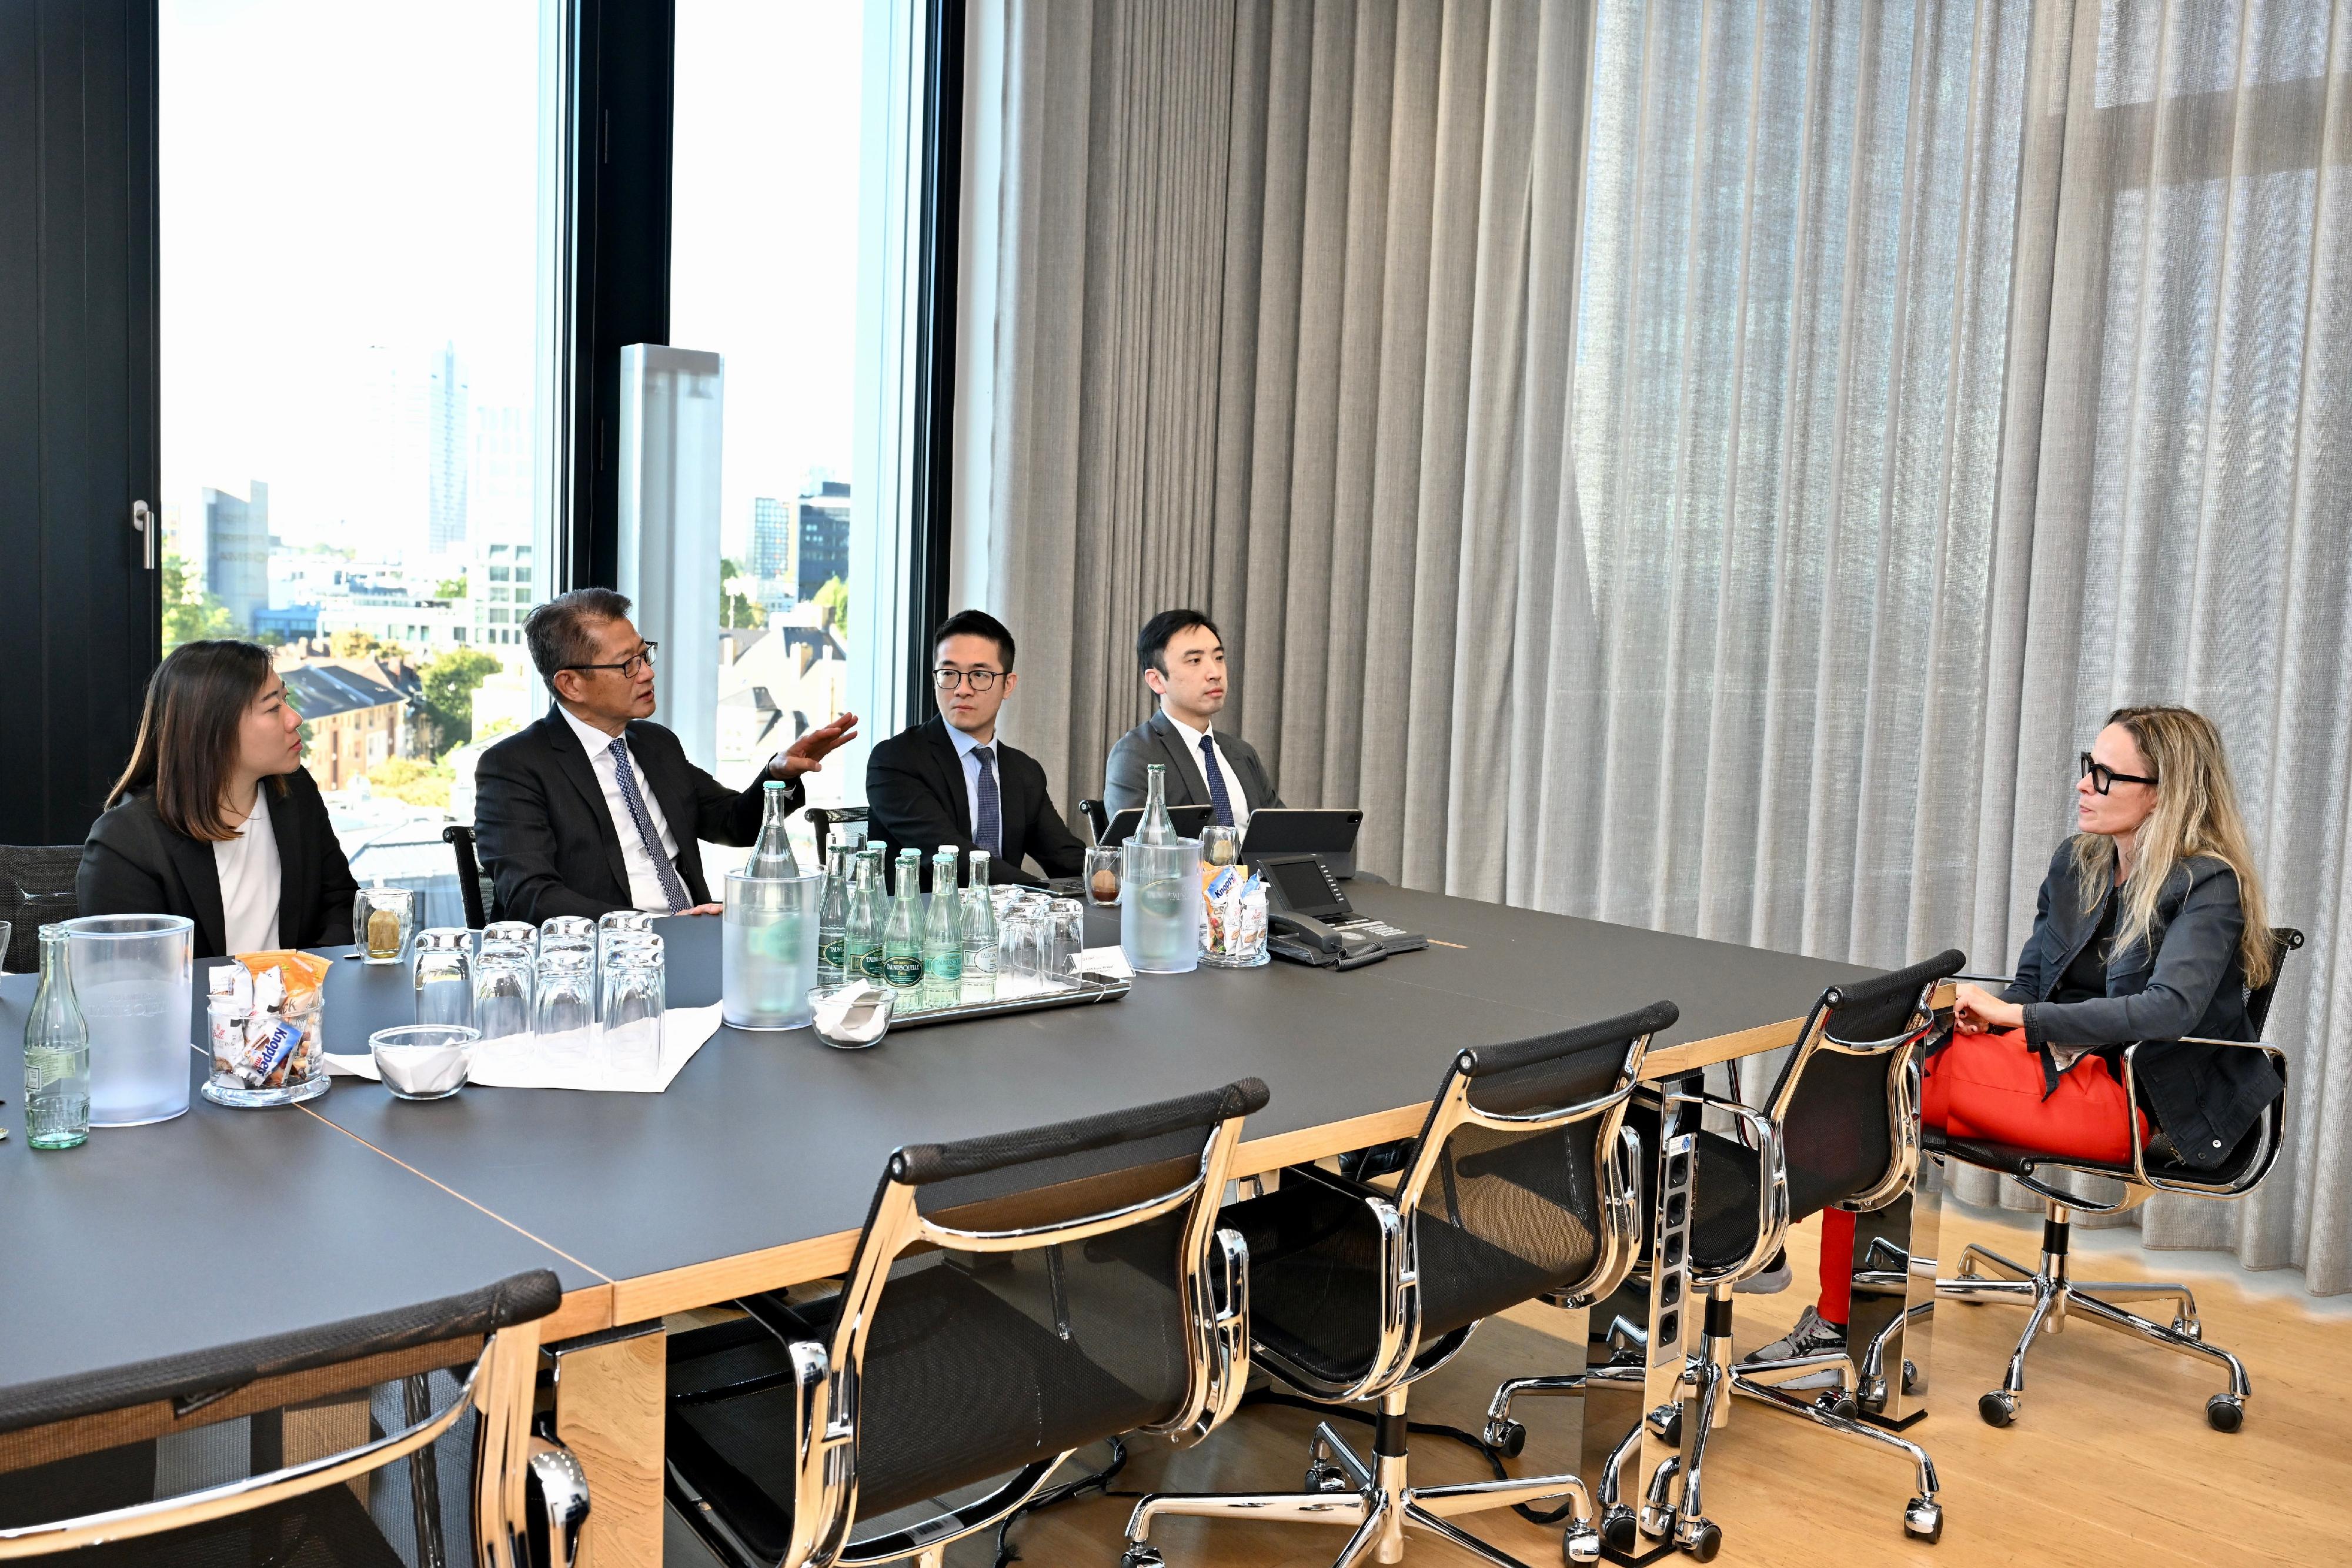 財政司司長陳茂波昨日（法蘭克福時間九月二十六日）訪問德國法蘭克福。圖示陳茂波（左二）到訪當地為金融科技初創企業服務的加速器公司並與創辦人交流。